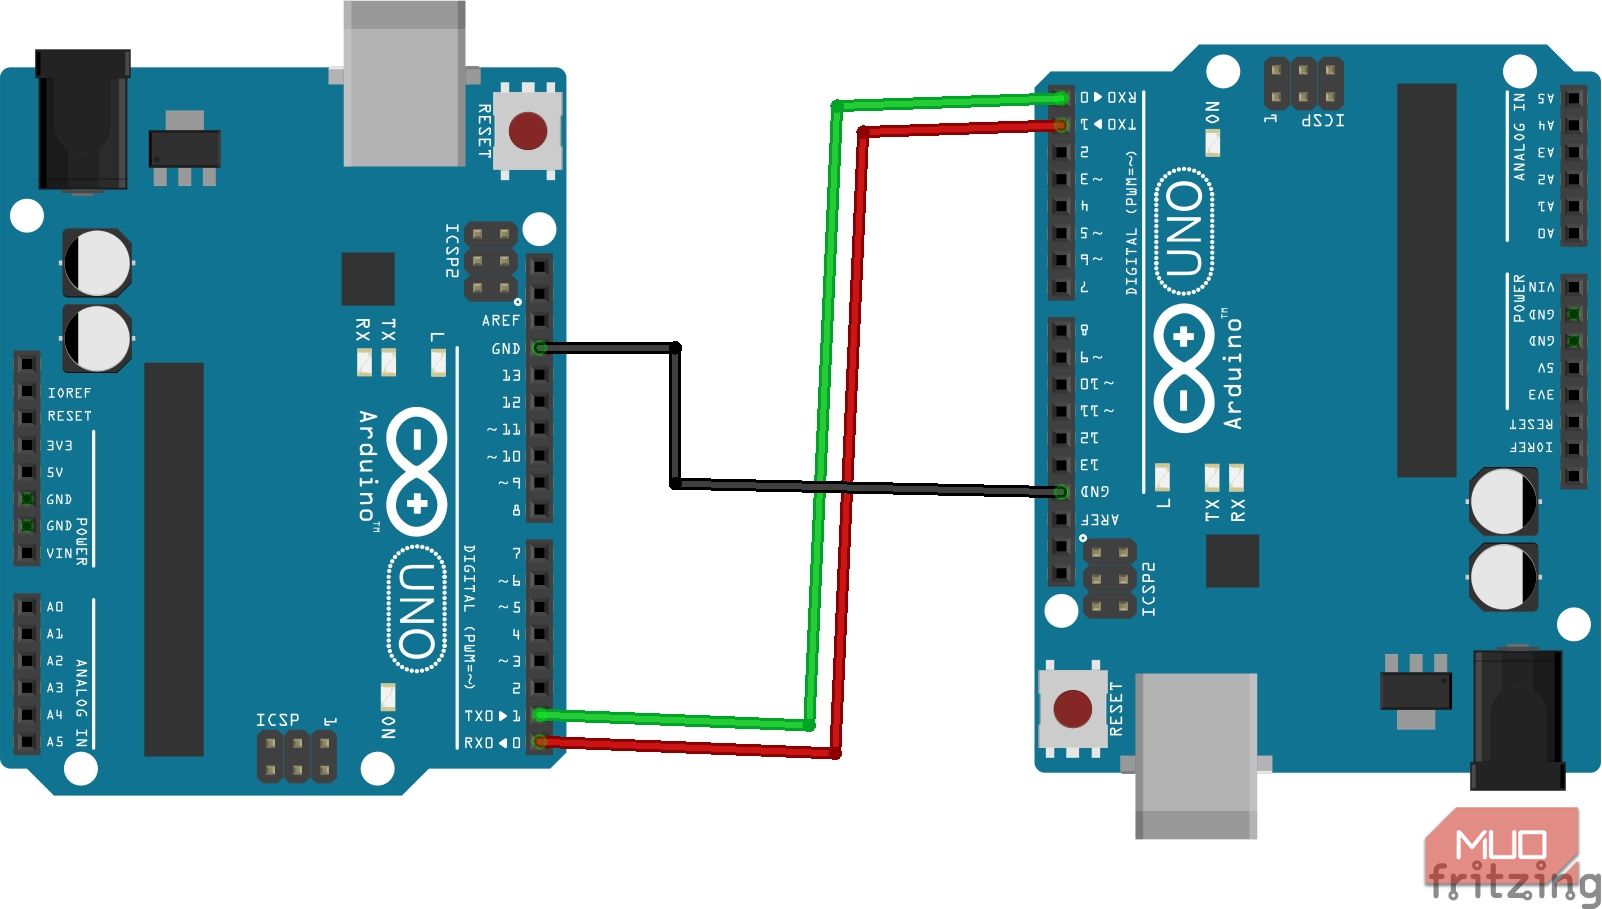 Sơ đồ nối dây giao tiếp UART/USART cho 2 board Arduino Uno